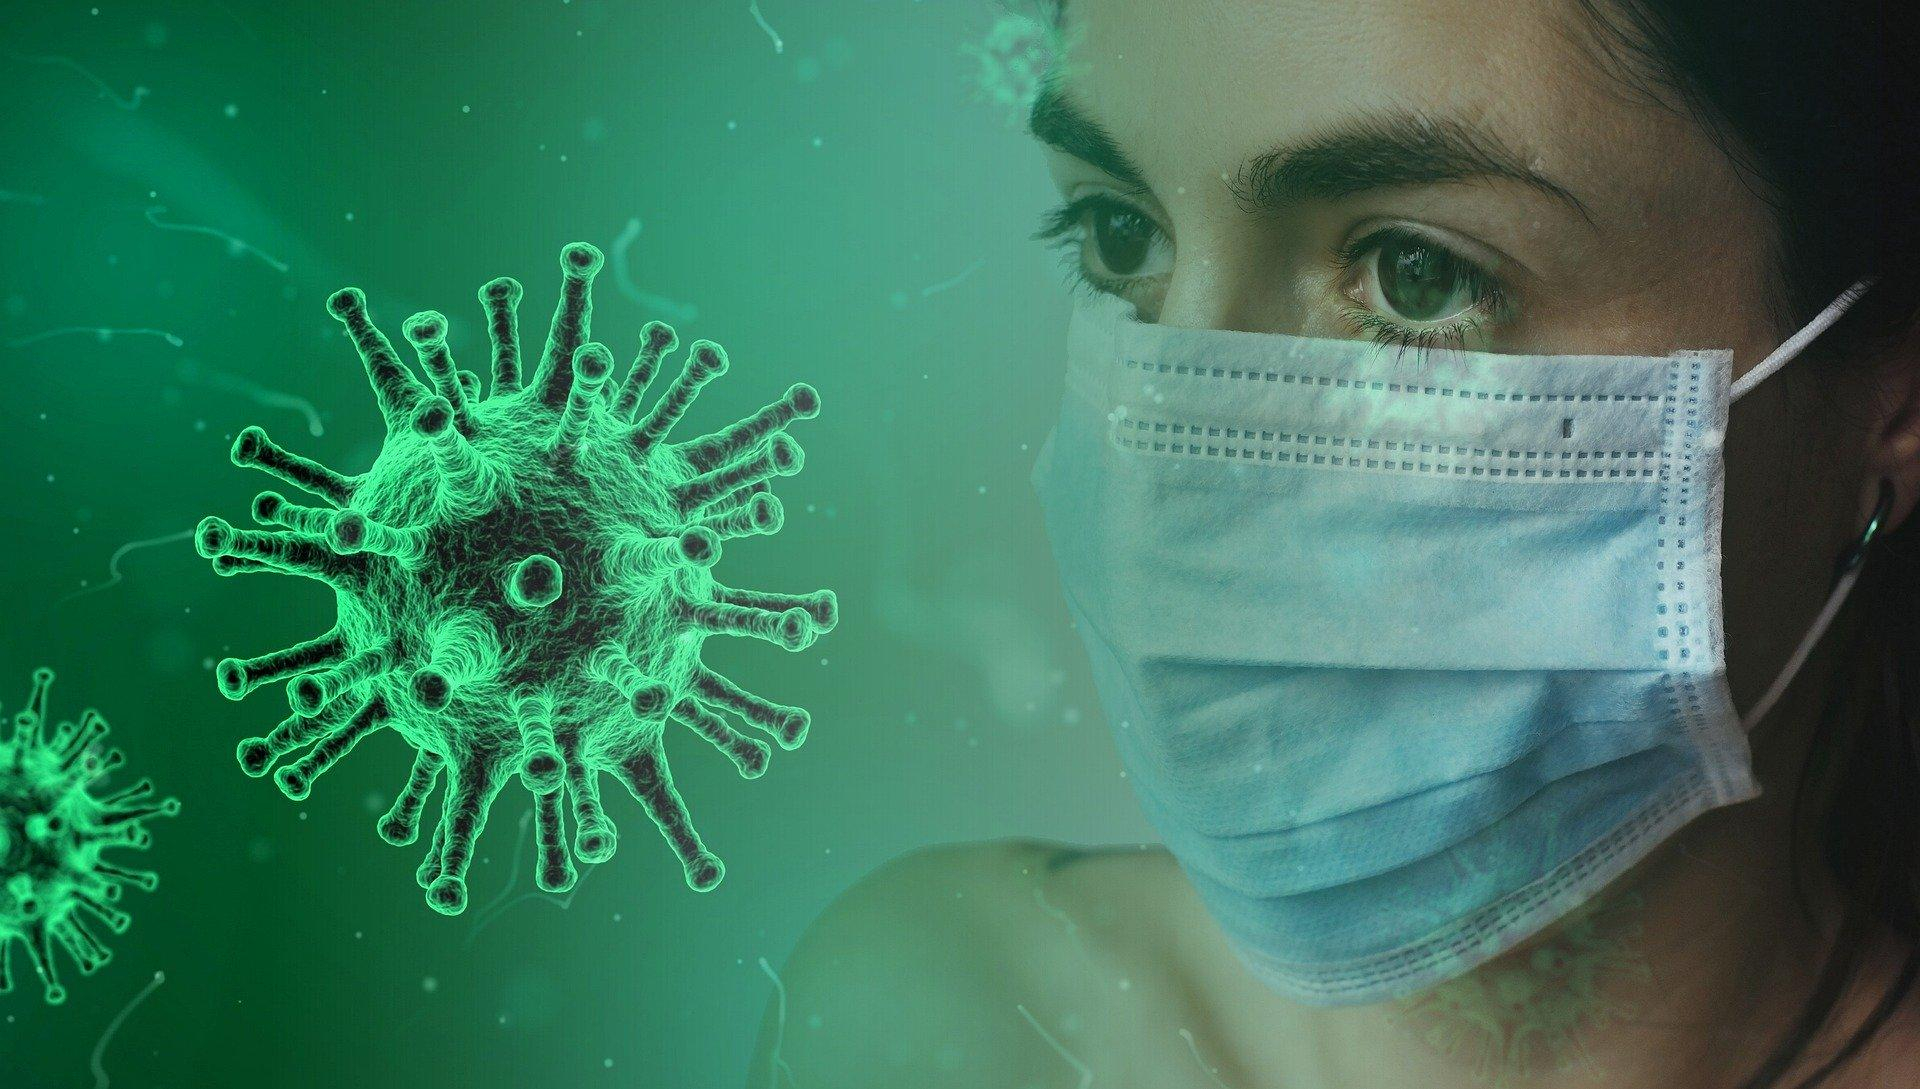 Новый день - новые заболевшие коронавирусом во Владимирской области